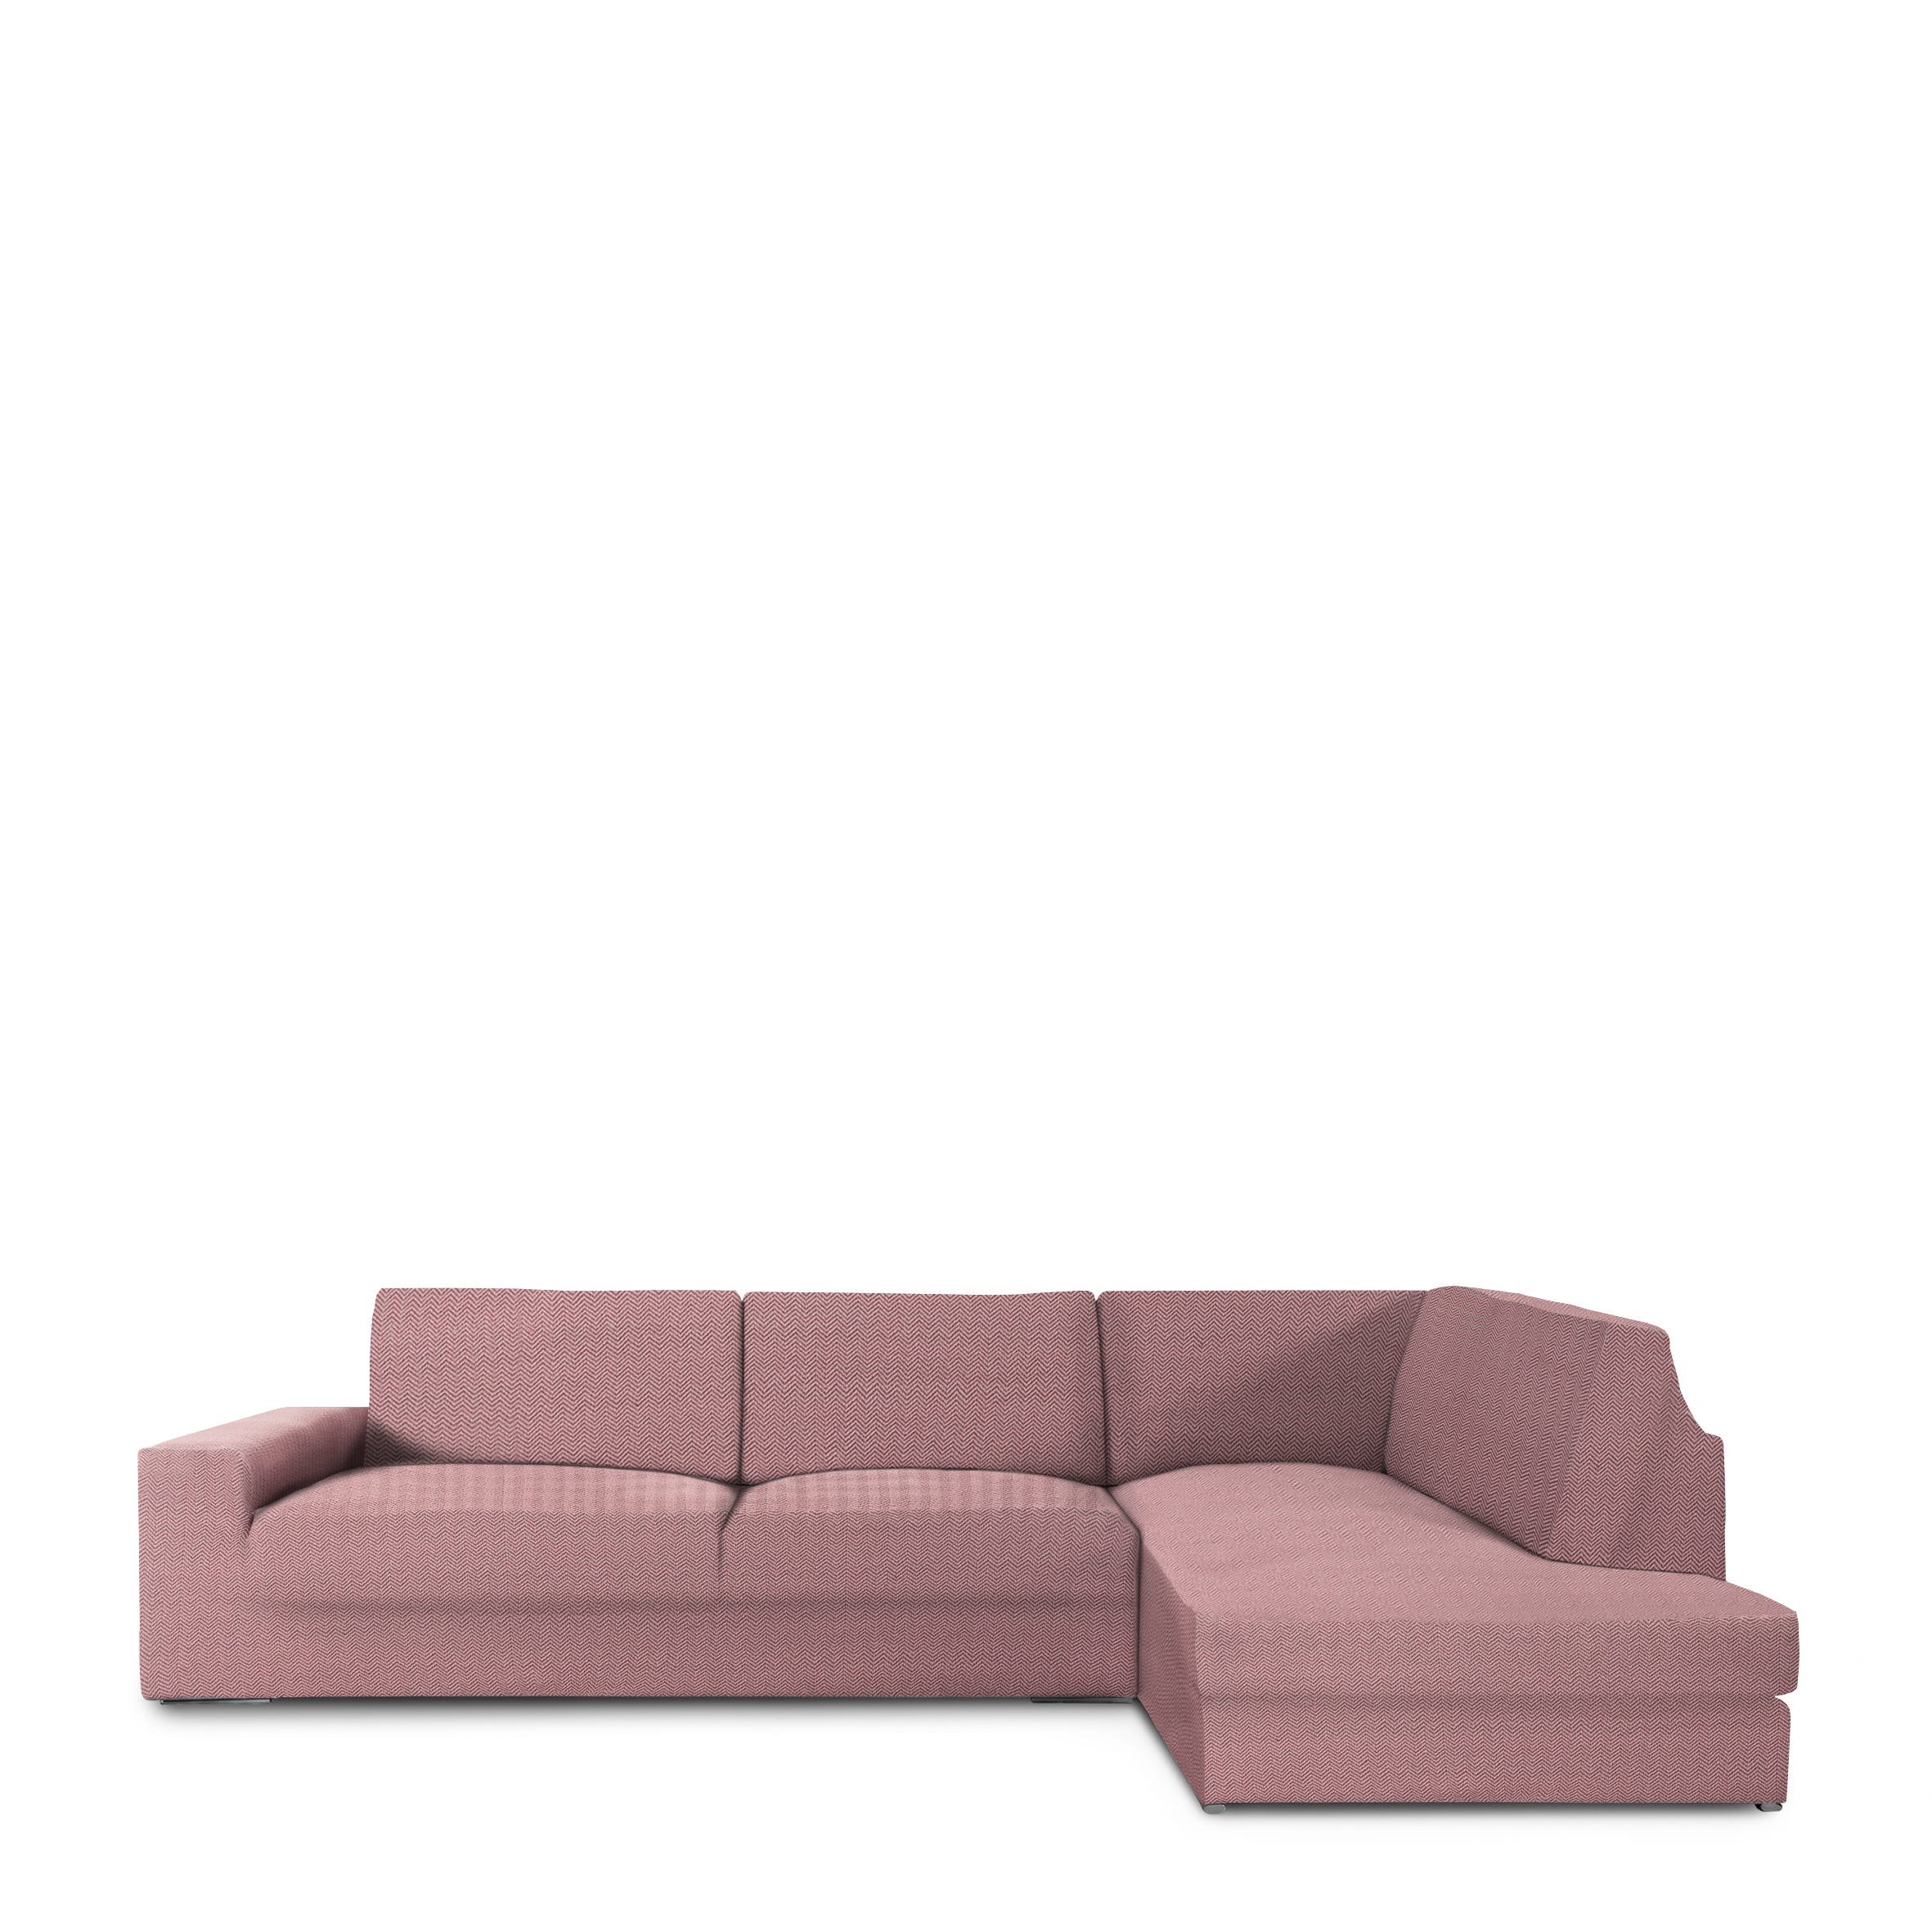 Copridivano Jaz per divano ad angolo con schienale destro rosa 350 - 500 cm